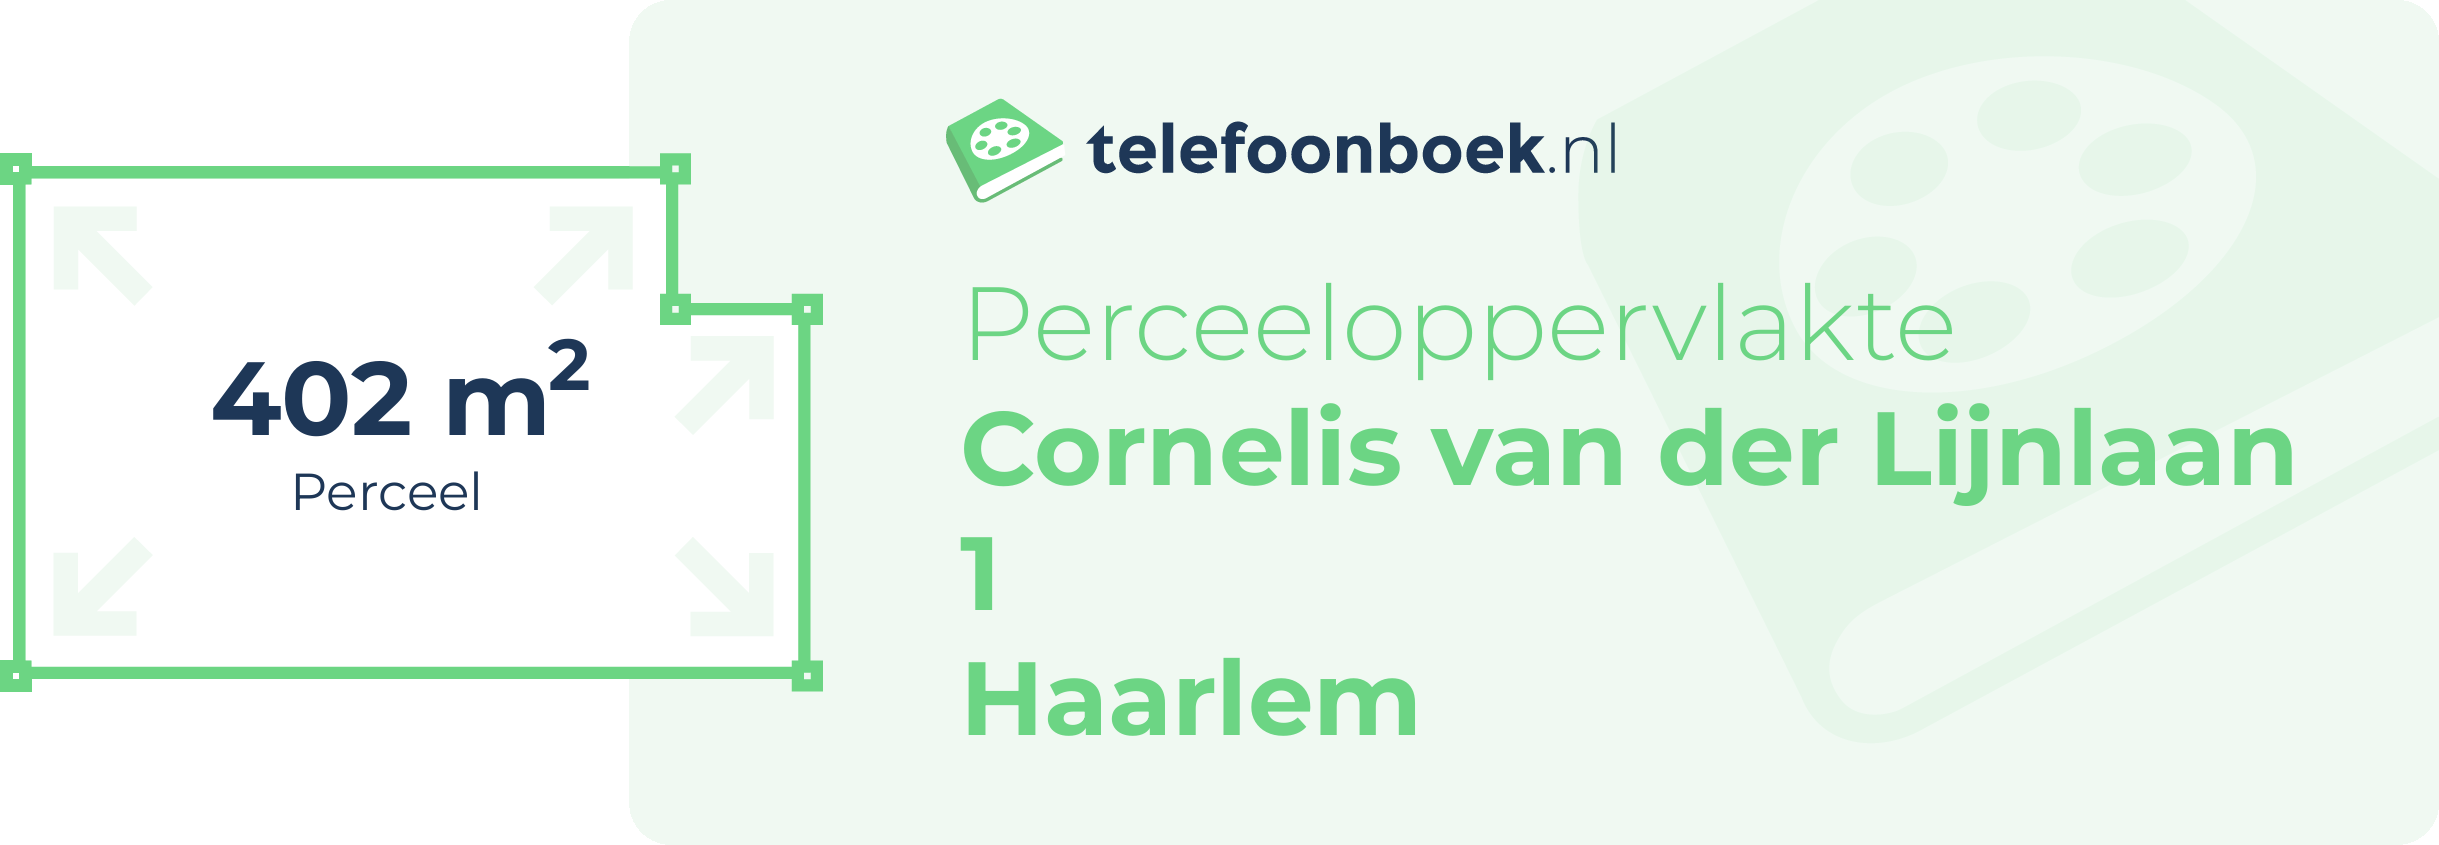 Perceeloppervlakte Cornelis Van Der Lijnlaan 1 Haarlem